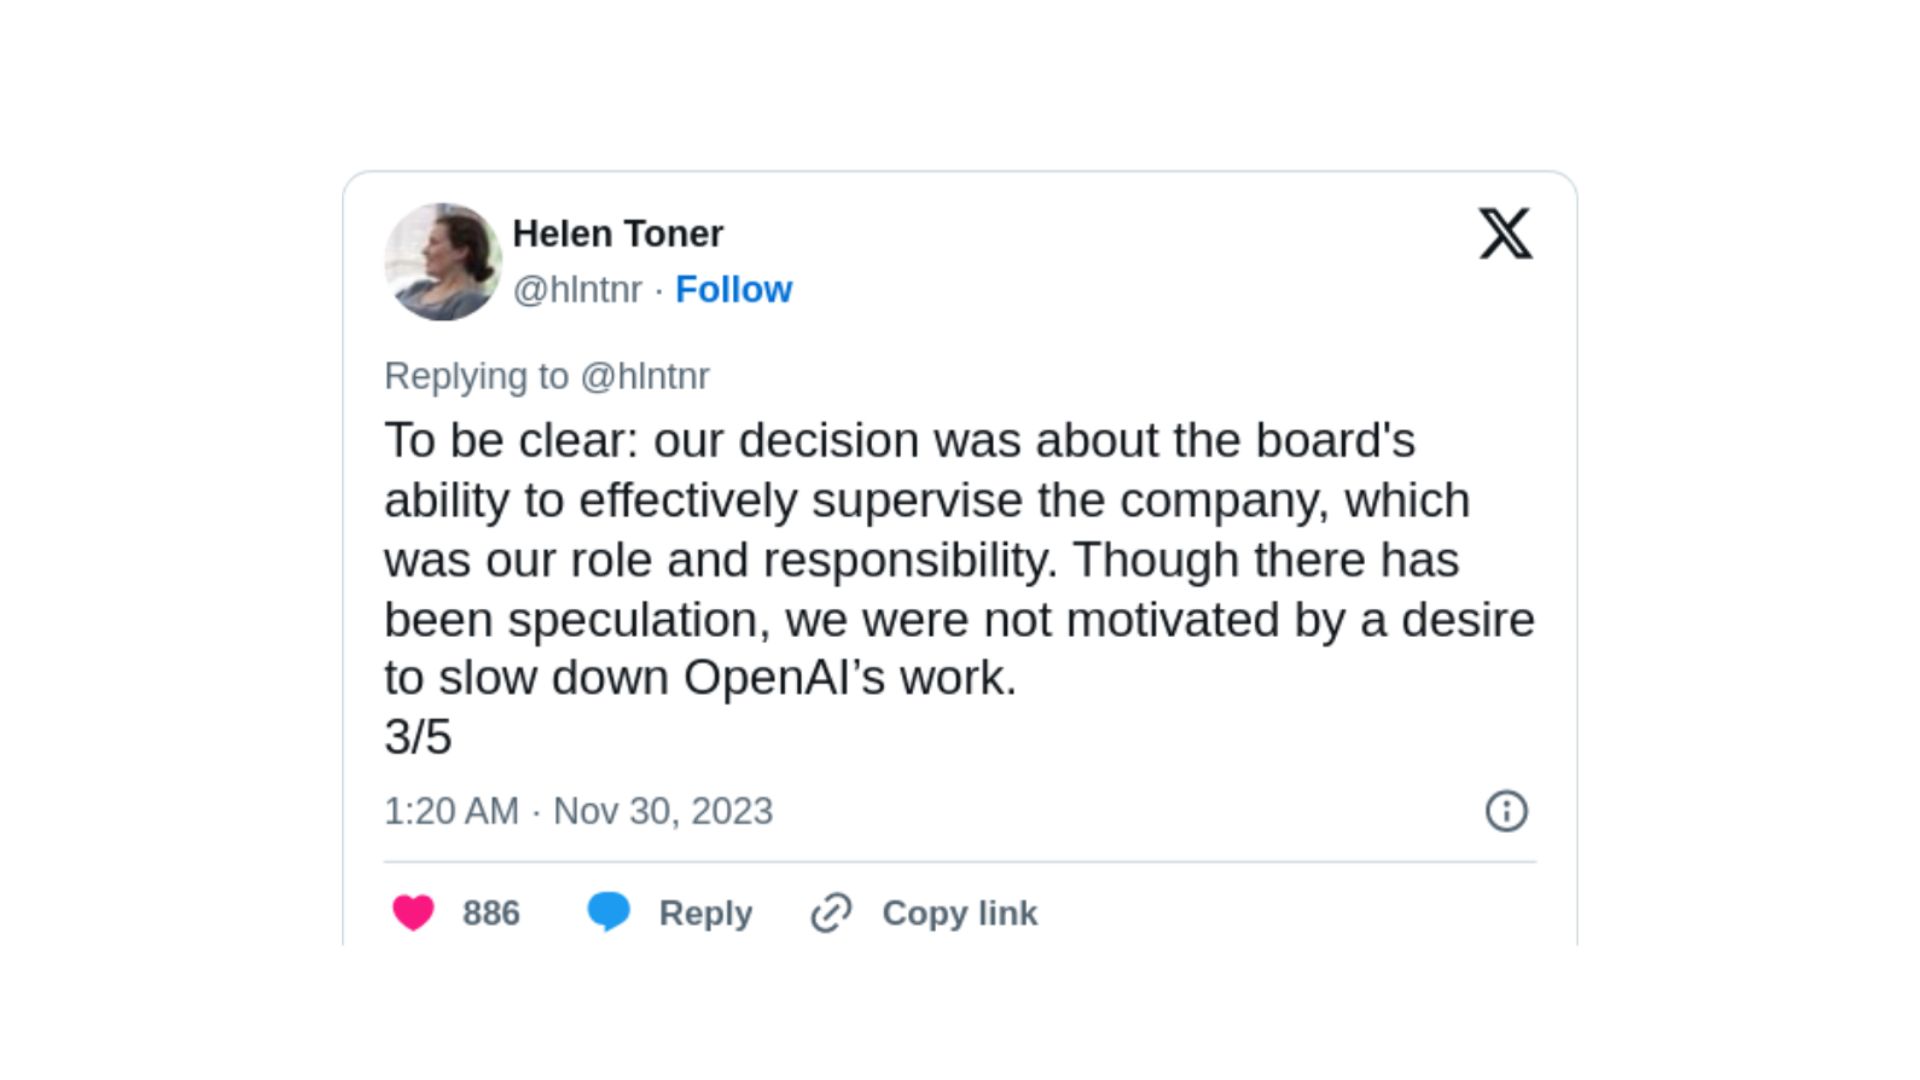 샘 알트만 복귀 이후 오픈AI 이사회에서 사임한 헬렌 토너의 트윗